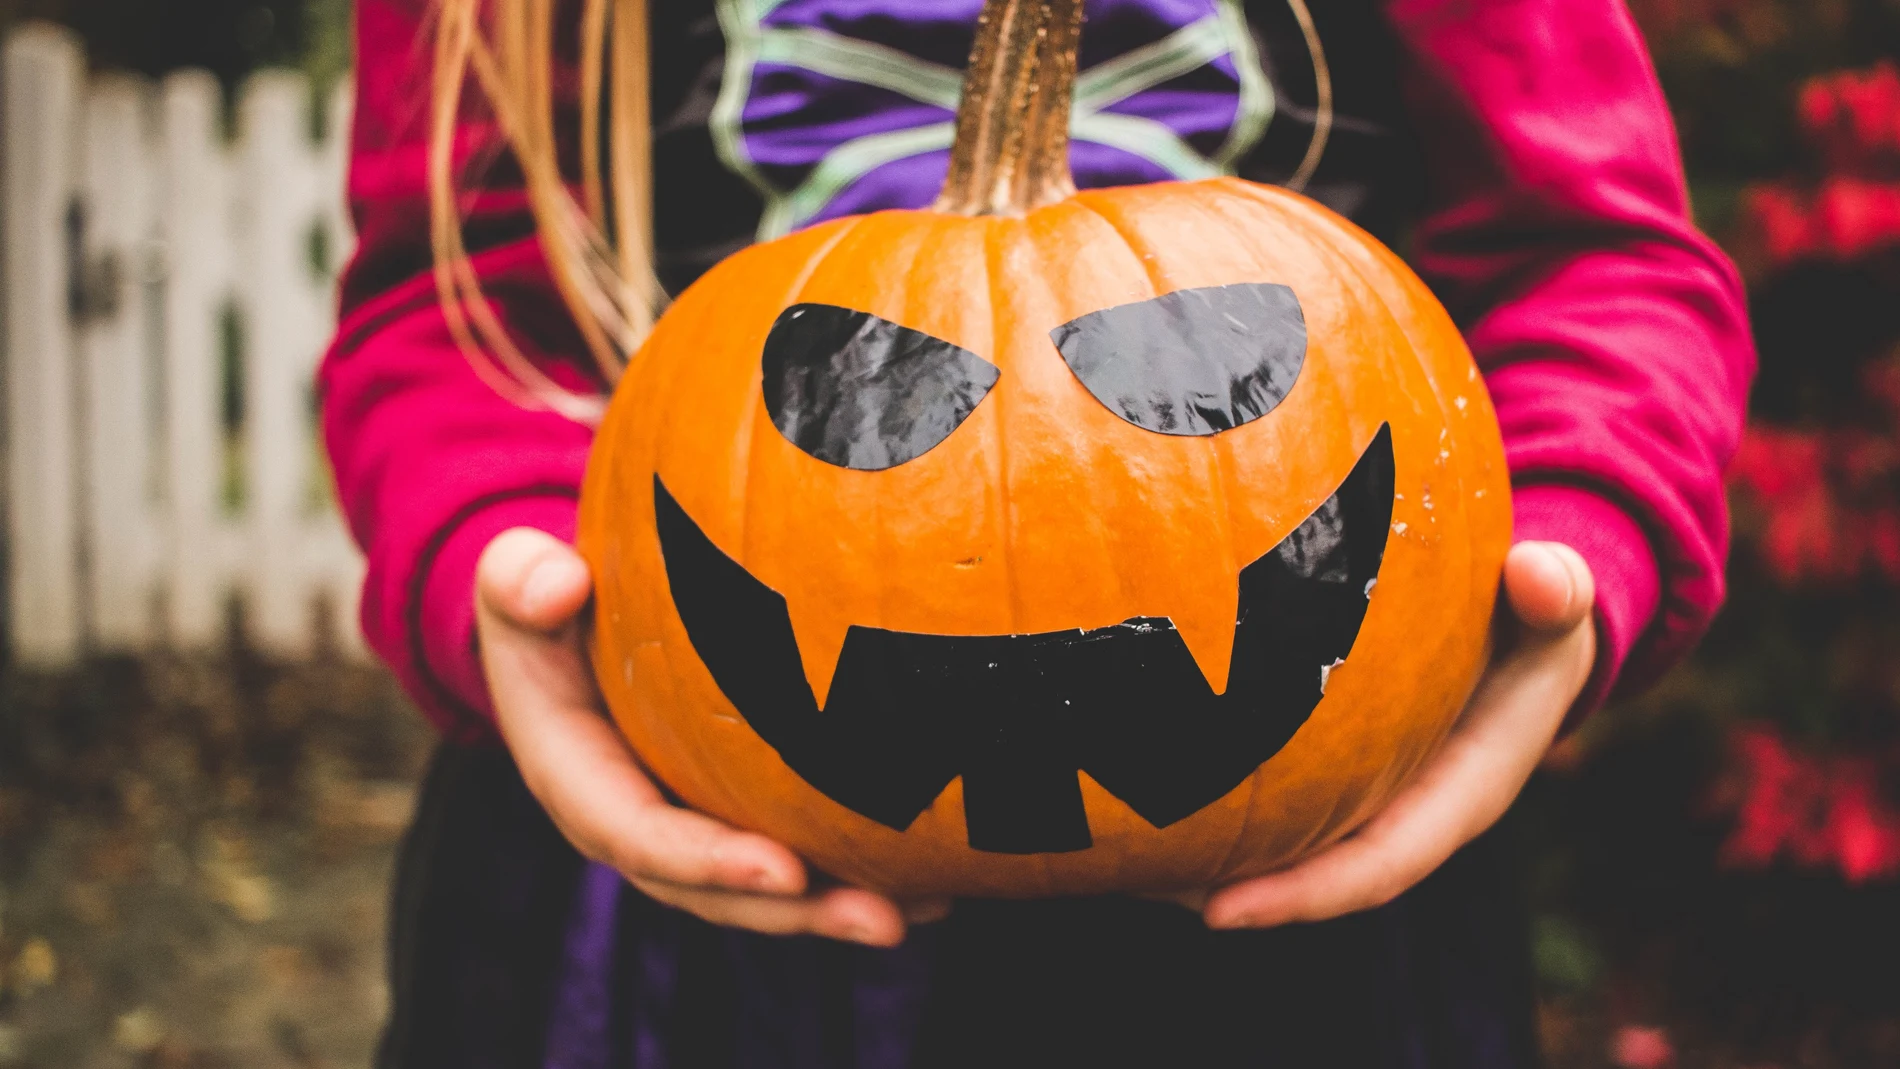 En la imagen, una niña sujeta una calabaza de Halloween.